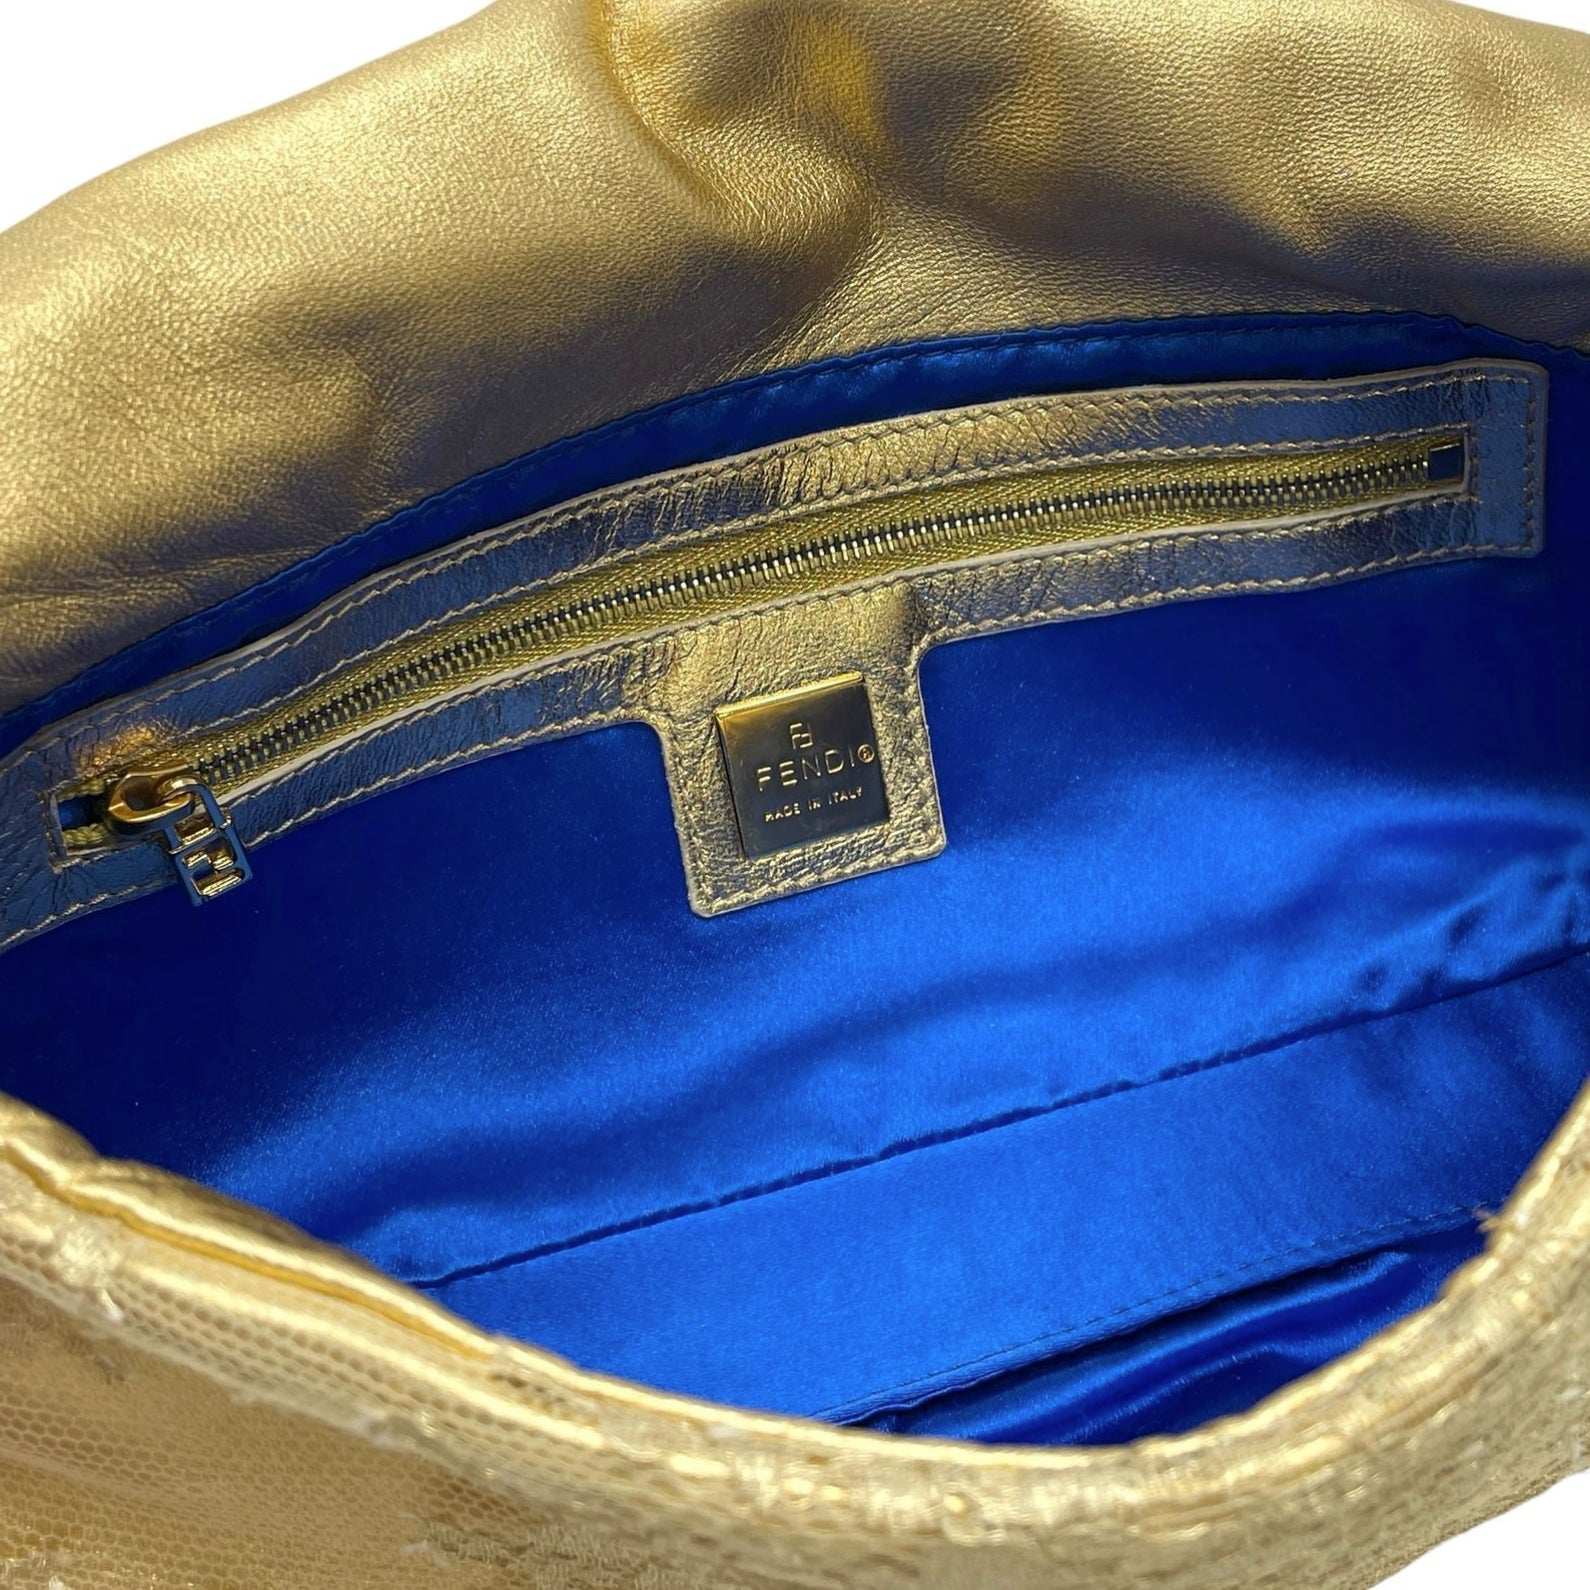 Fendi Gold Lace Baguette Bag - Handbags